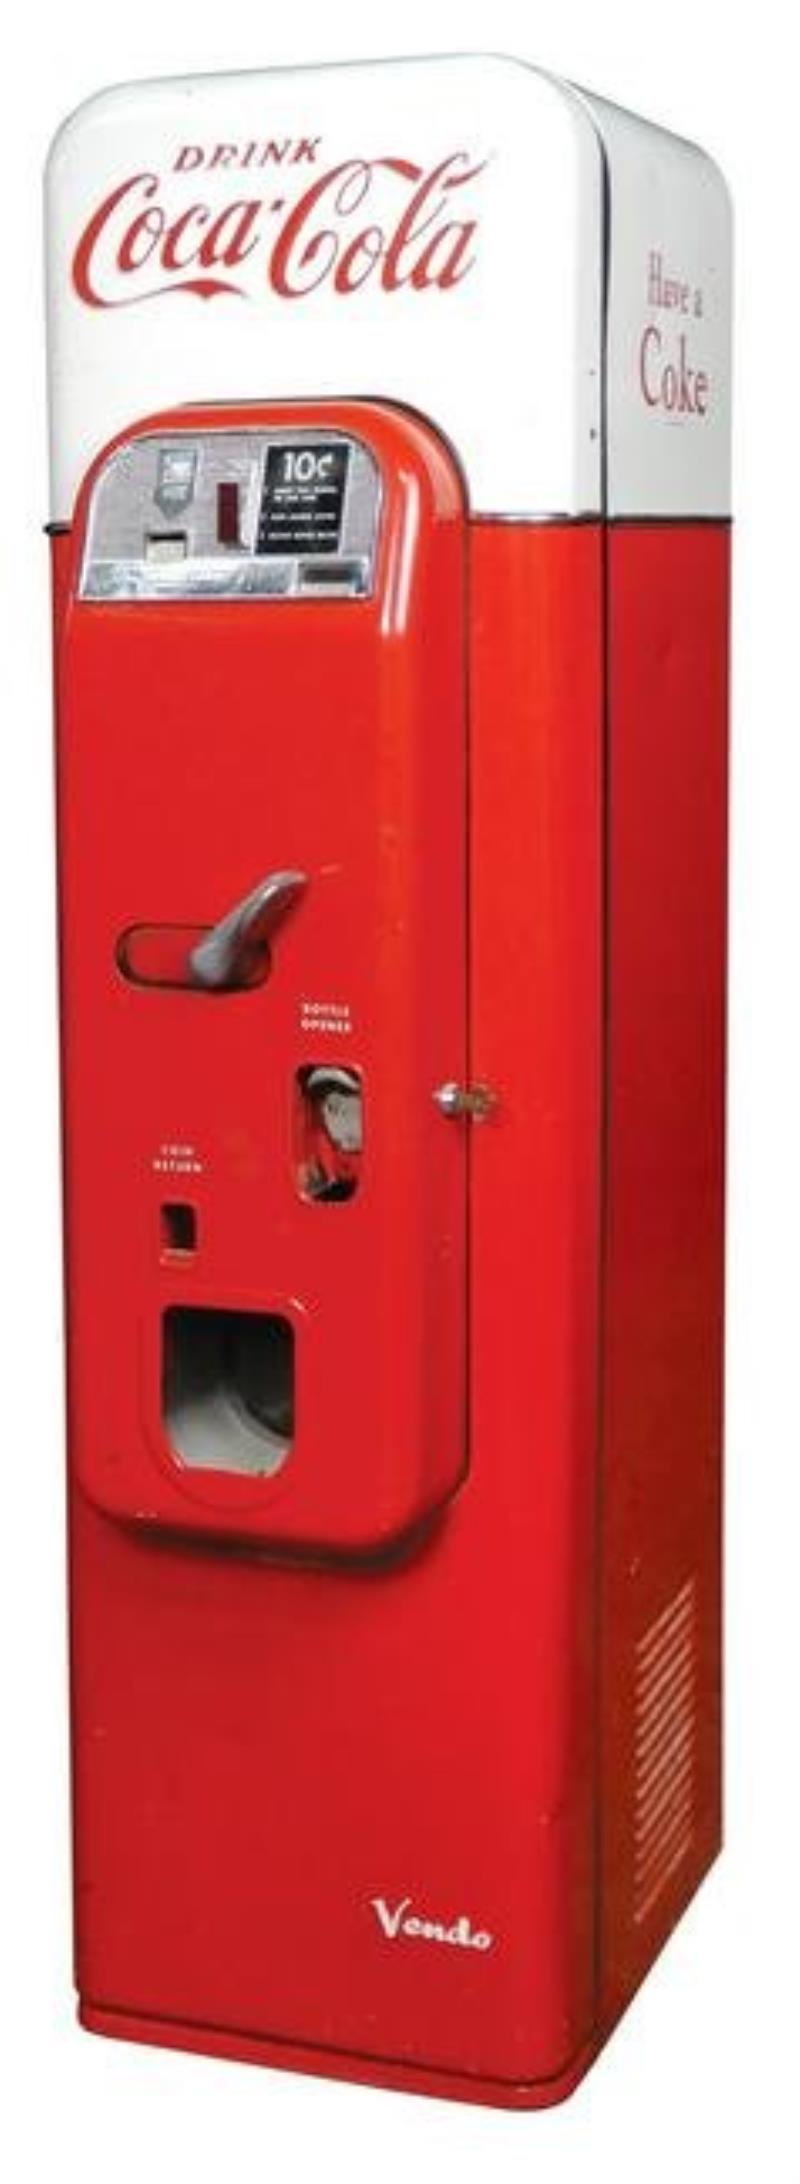 Coca-Cola Coin-Operated Vending Machine, Vendo 44, 10